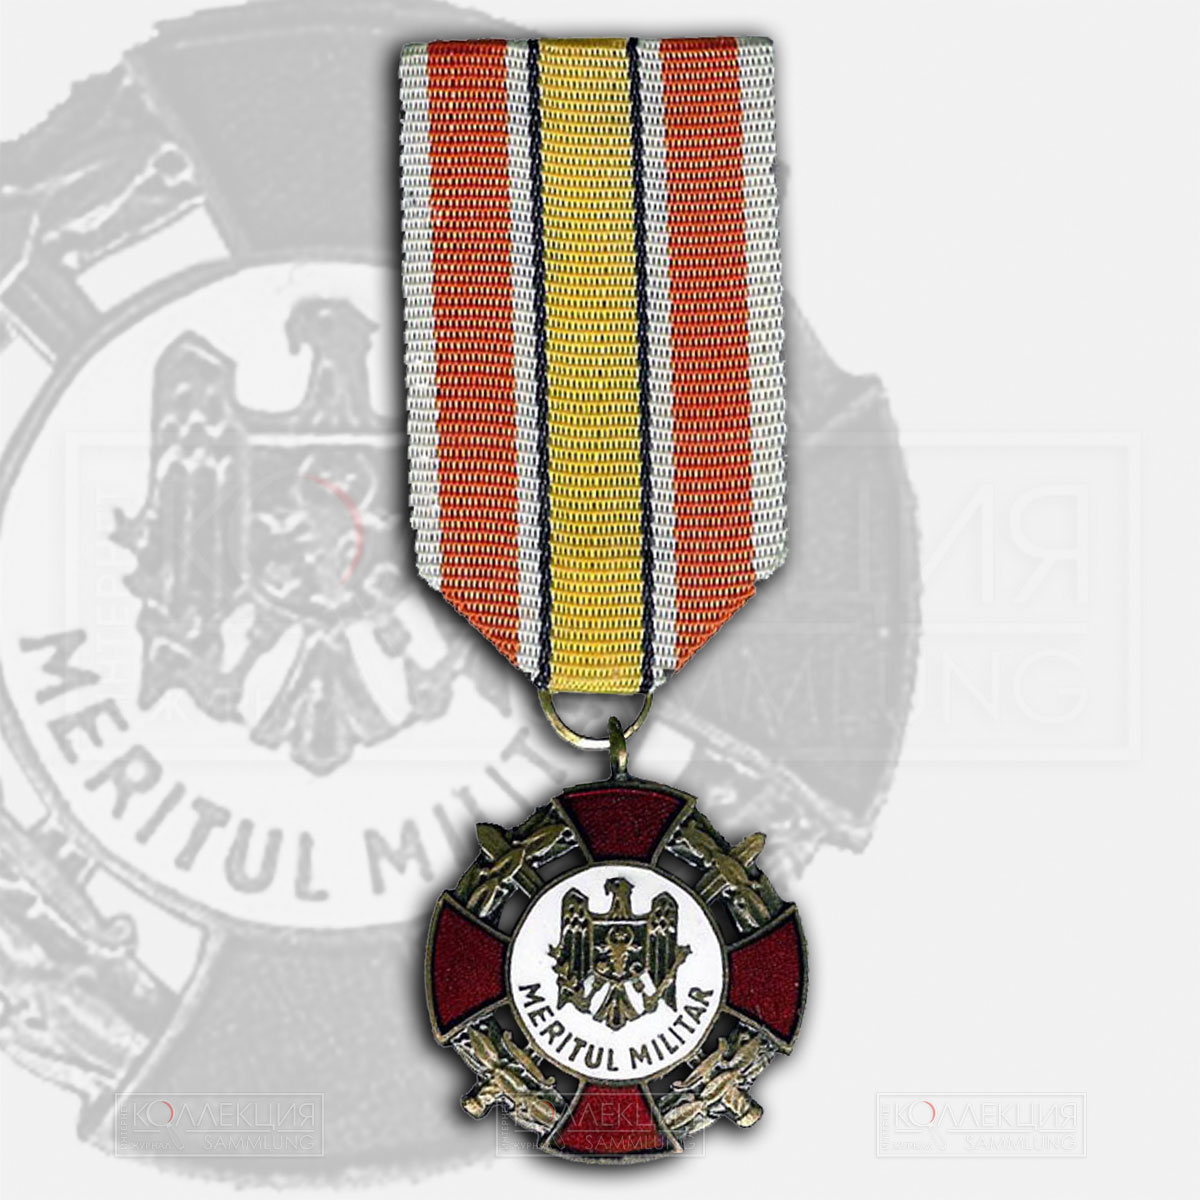 Медаль Молдавии «За заслуги в воинской службе» (молд. «Meritul Militar»). Учреждена 30 июля 1992 года. В основном награждены воевавшие в 1992 году с приднестровскими «сепаратистами». Фото: commons.wikimedia.org. Автор: Дмитрий89